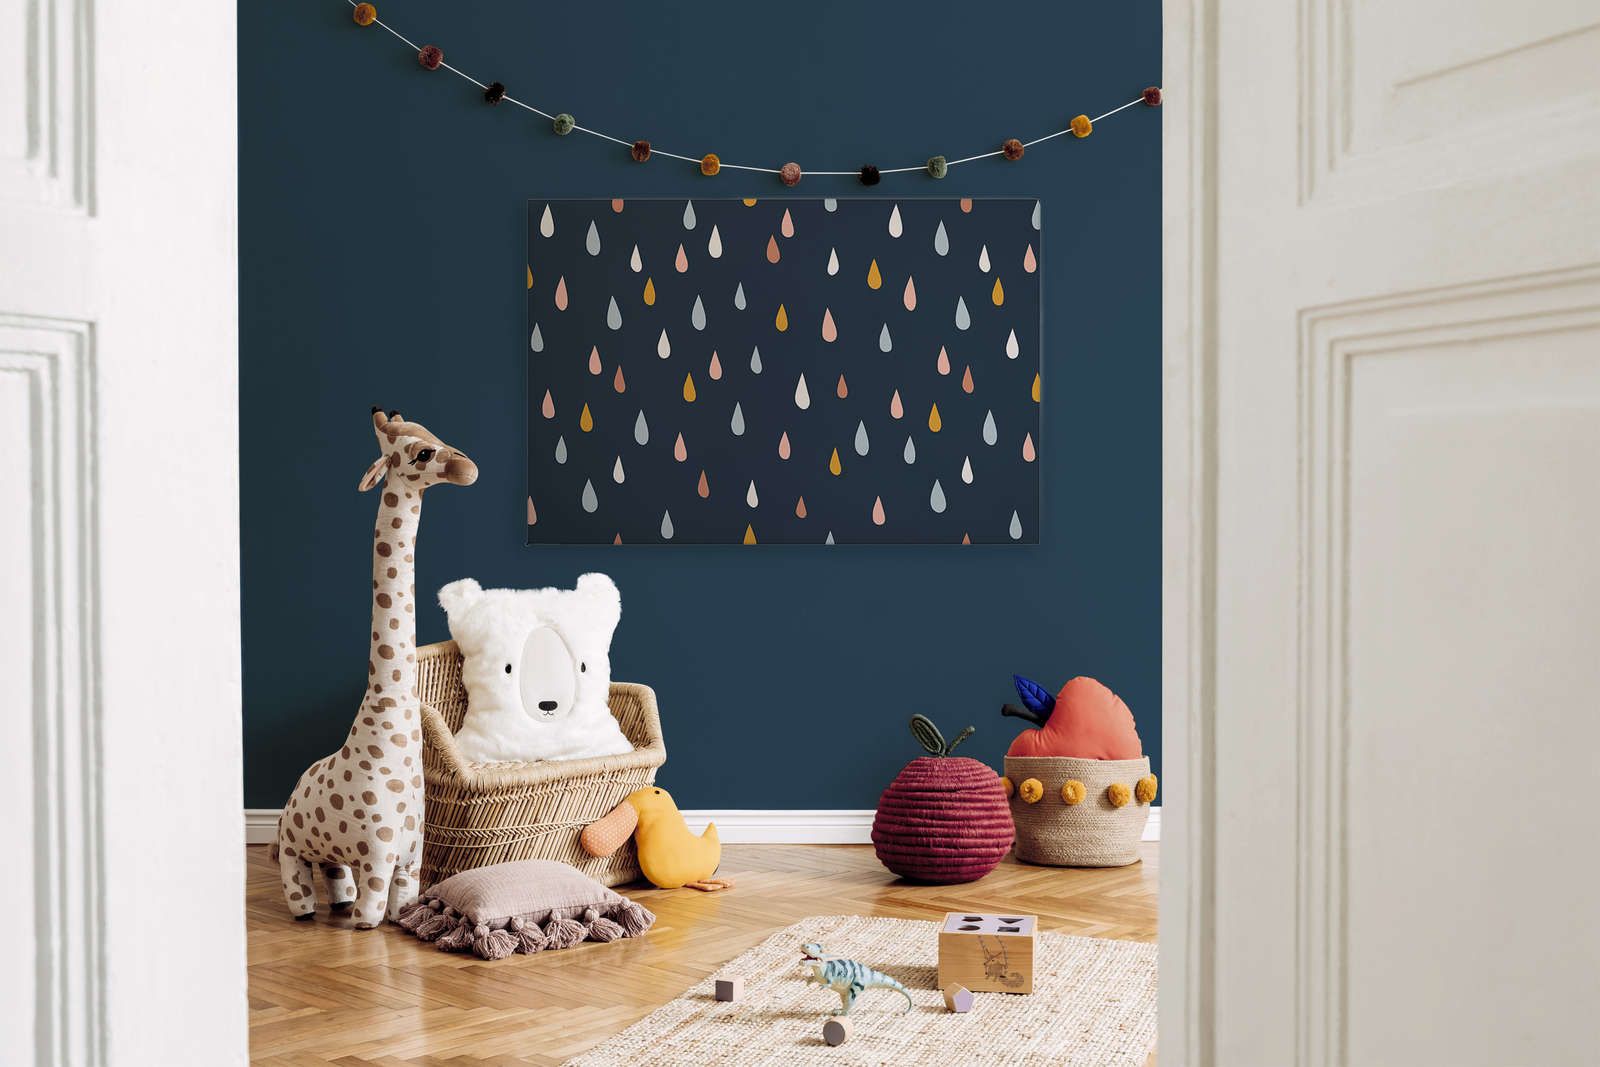             Tela per la camera dei bambini con gocce colorate - 120 cm x 80 cm
        